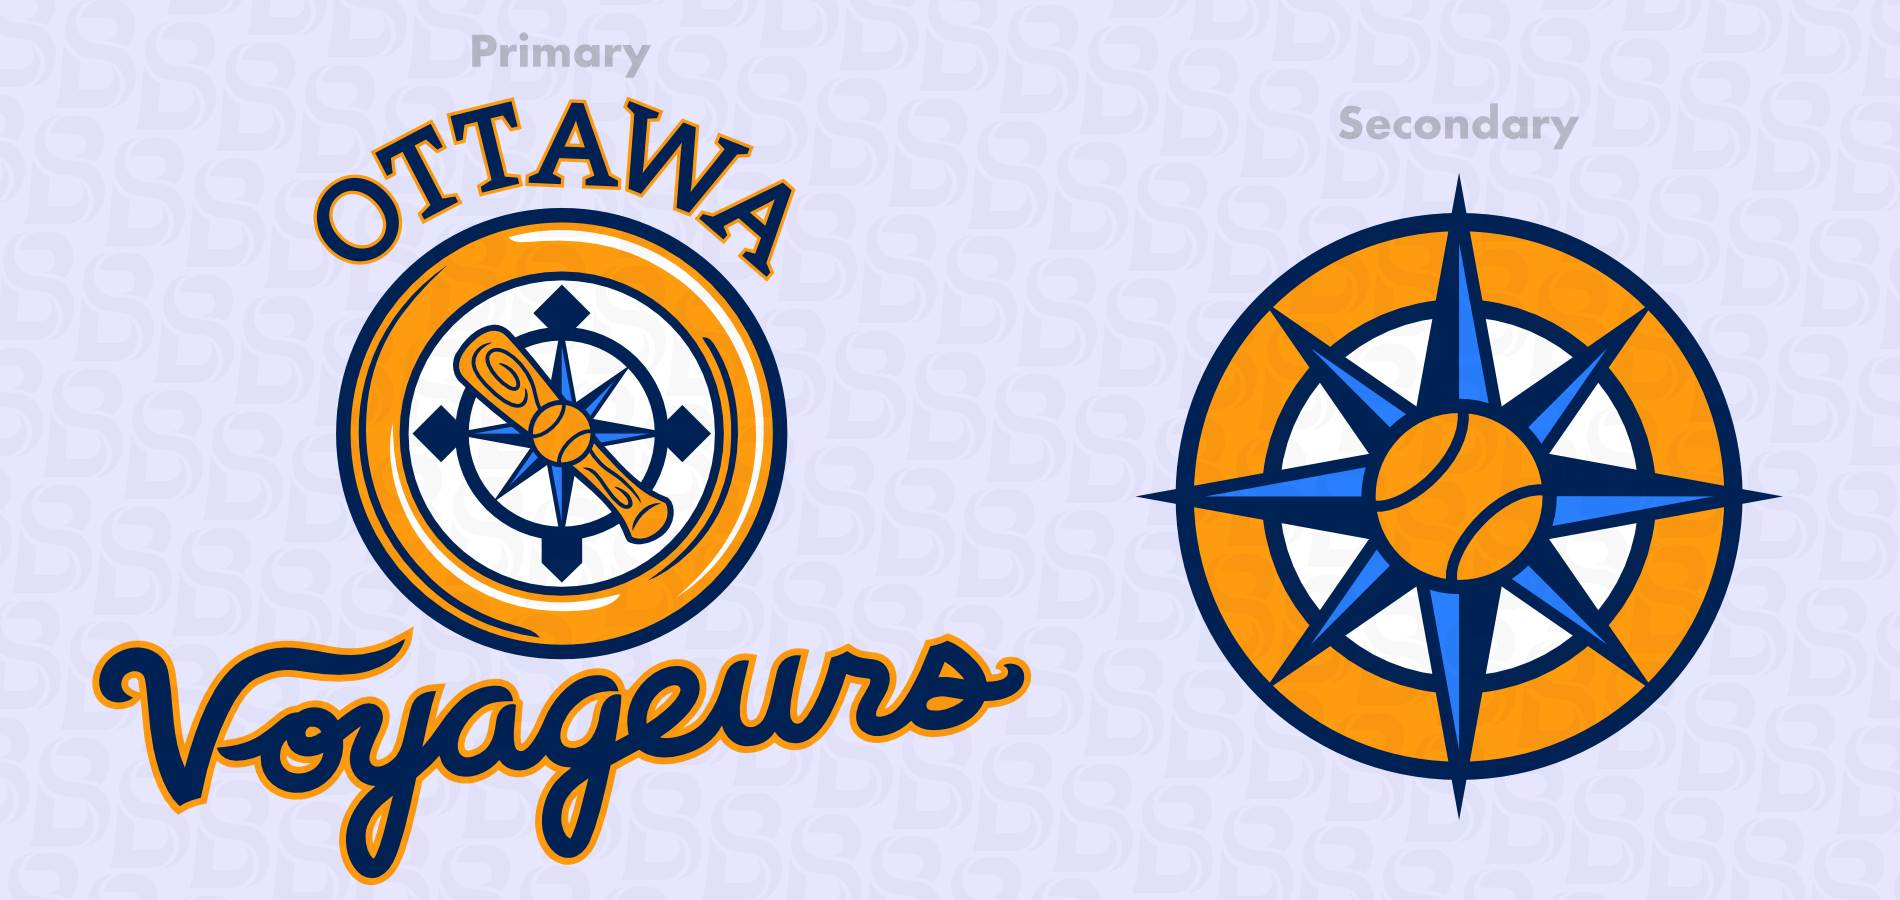 Ottawa-Voyageurs-logos.png